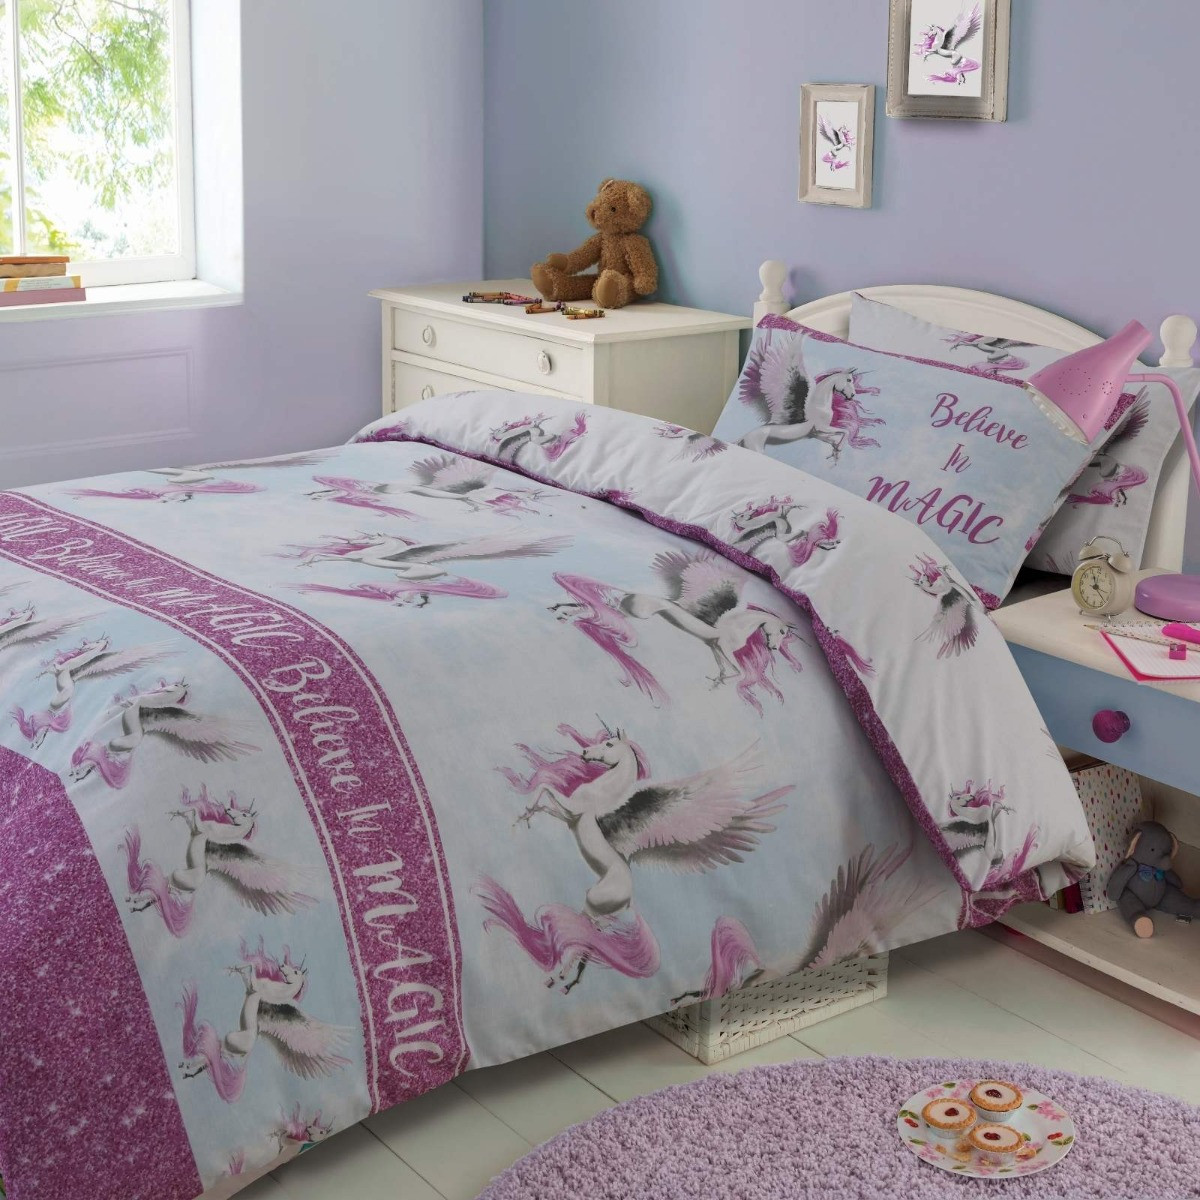 Dreamscene Flying Unicorn Duvet Cover with Pillowcase Reversible Kids Girl Fairy Bedding Set, Pink Blue White - Double>